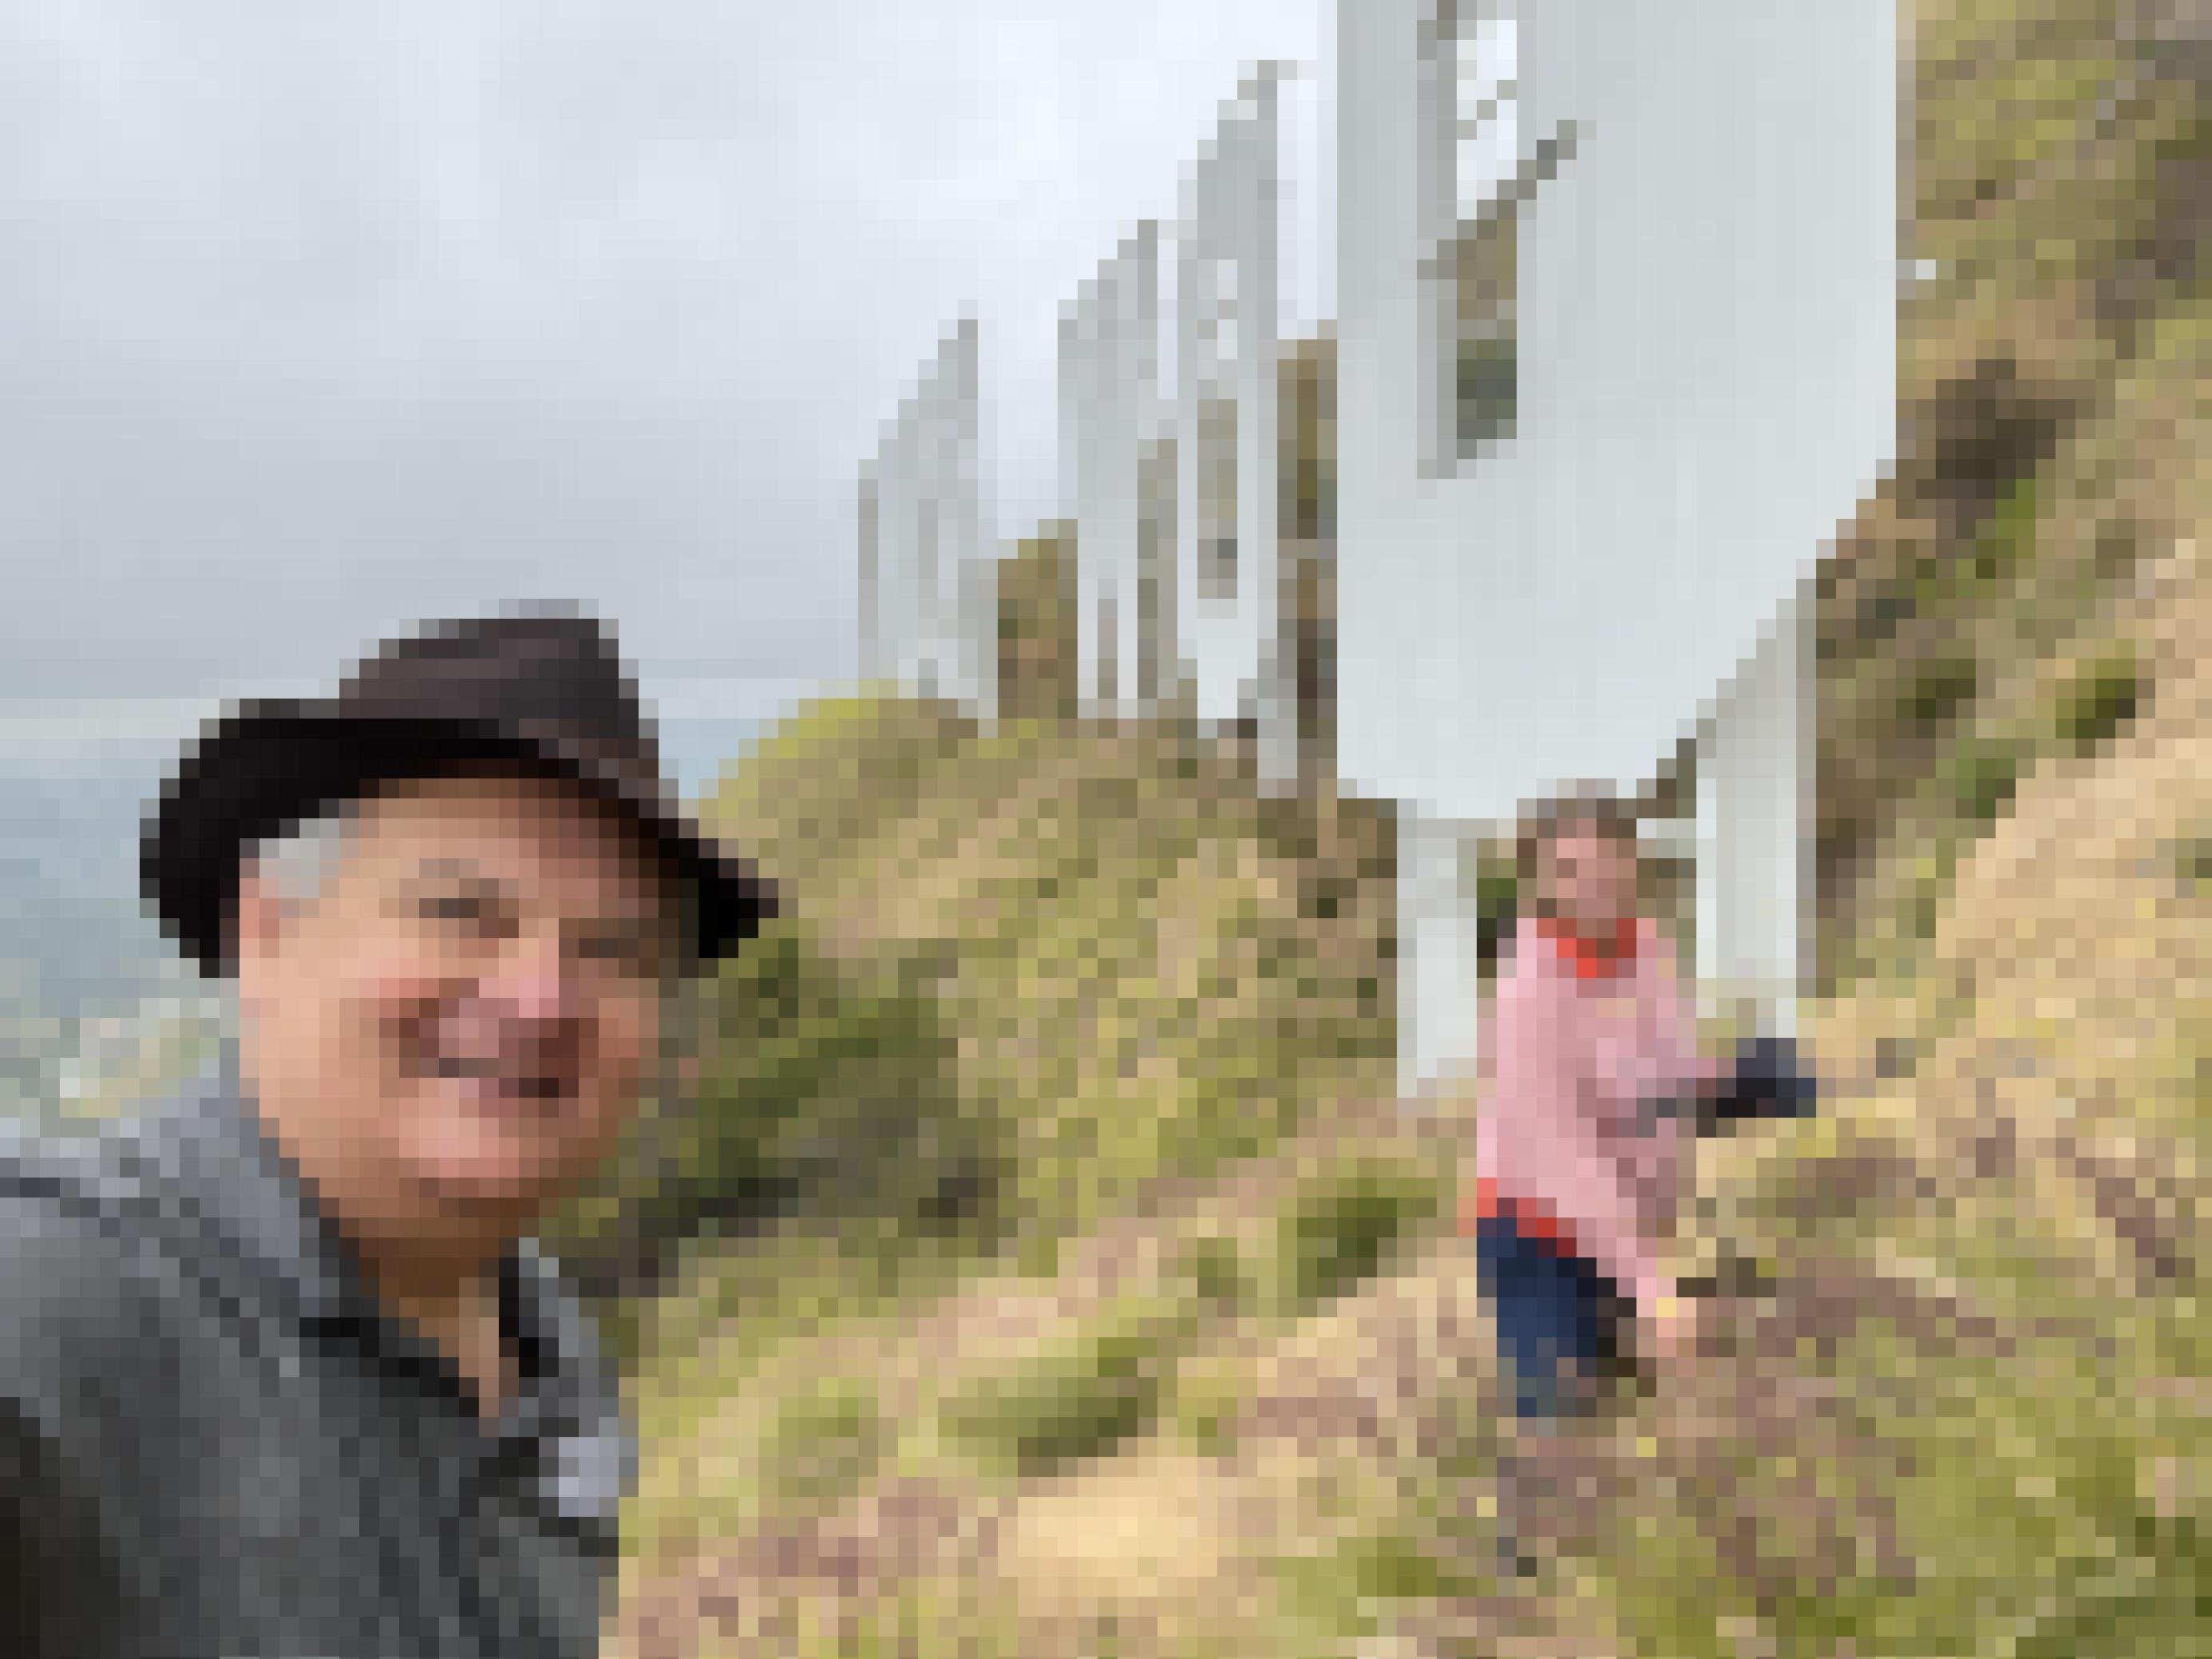 Selfie am Abhang mit dem Hollywood Schriftzug, im Vordergrund ein lächelnder Mann mit Hut, dahinter die Reporterin und die 20 Meter hohen Buchstaben